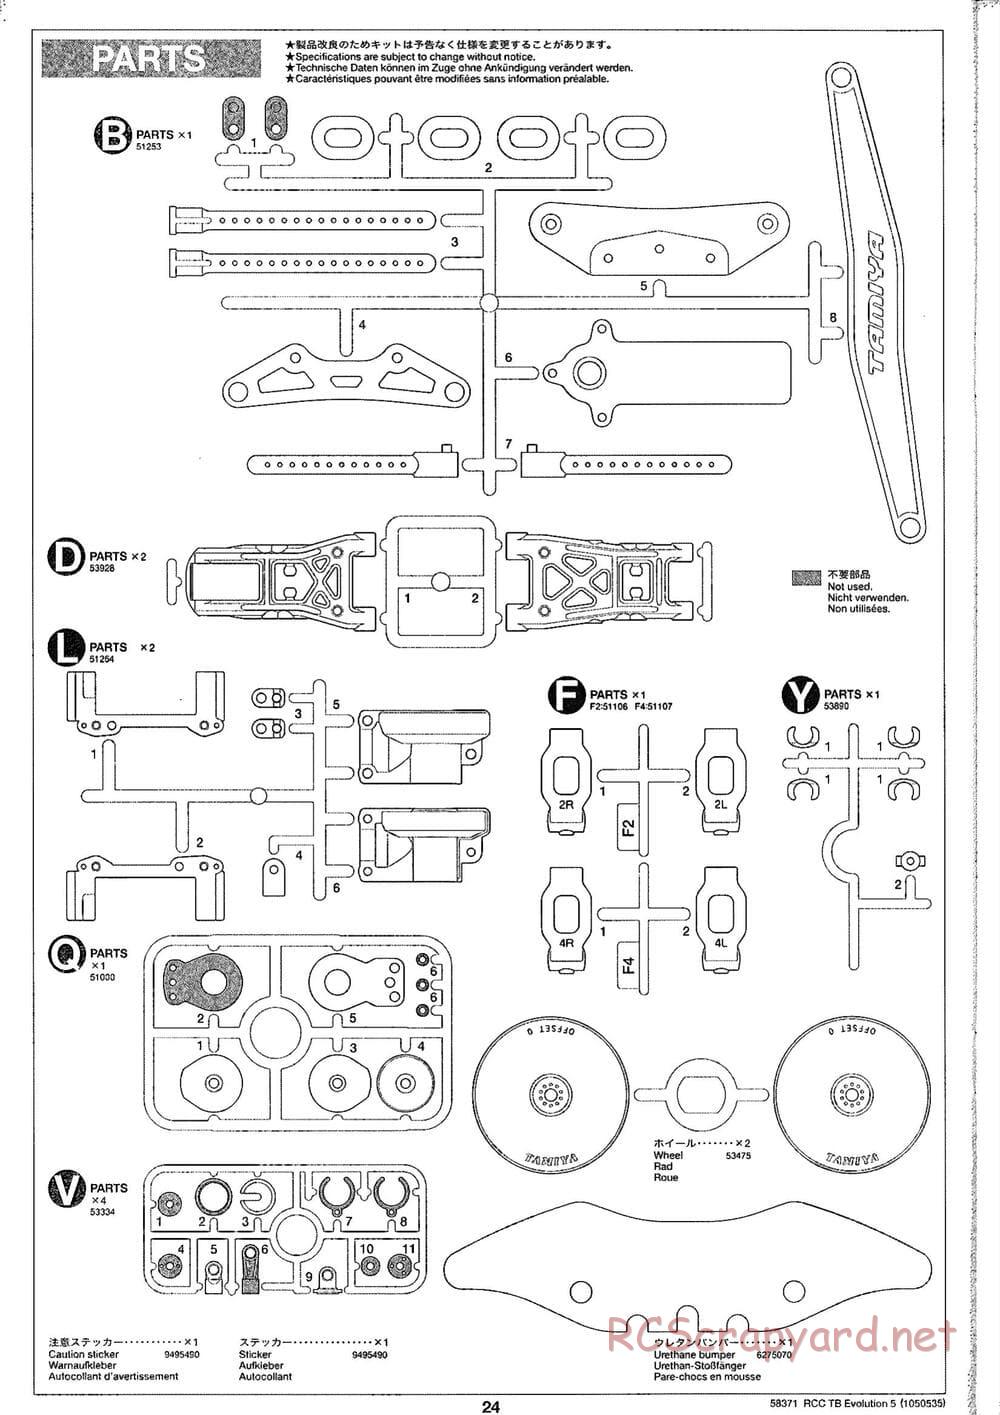 Tamiya - TB Evolution V Chassis - Manual - Page 24